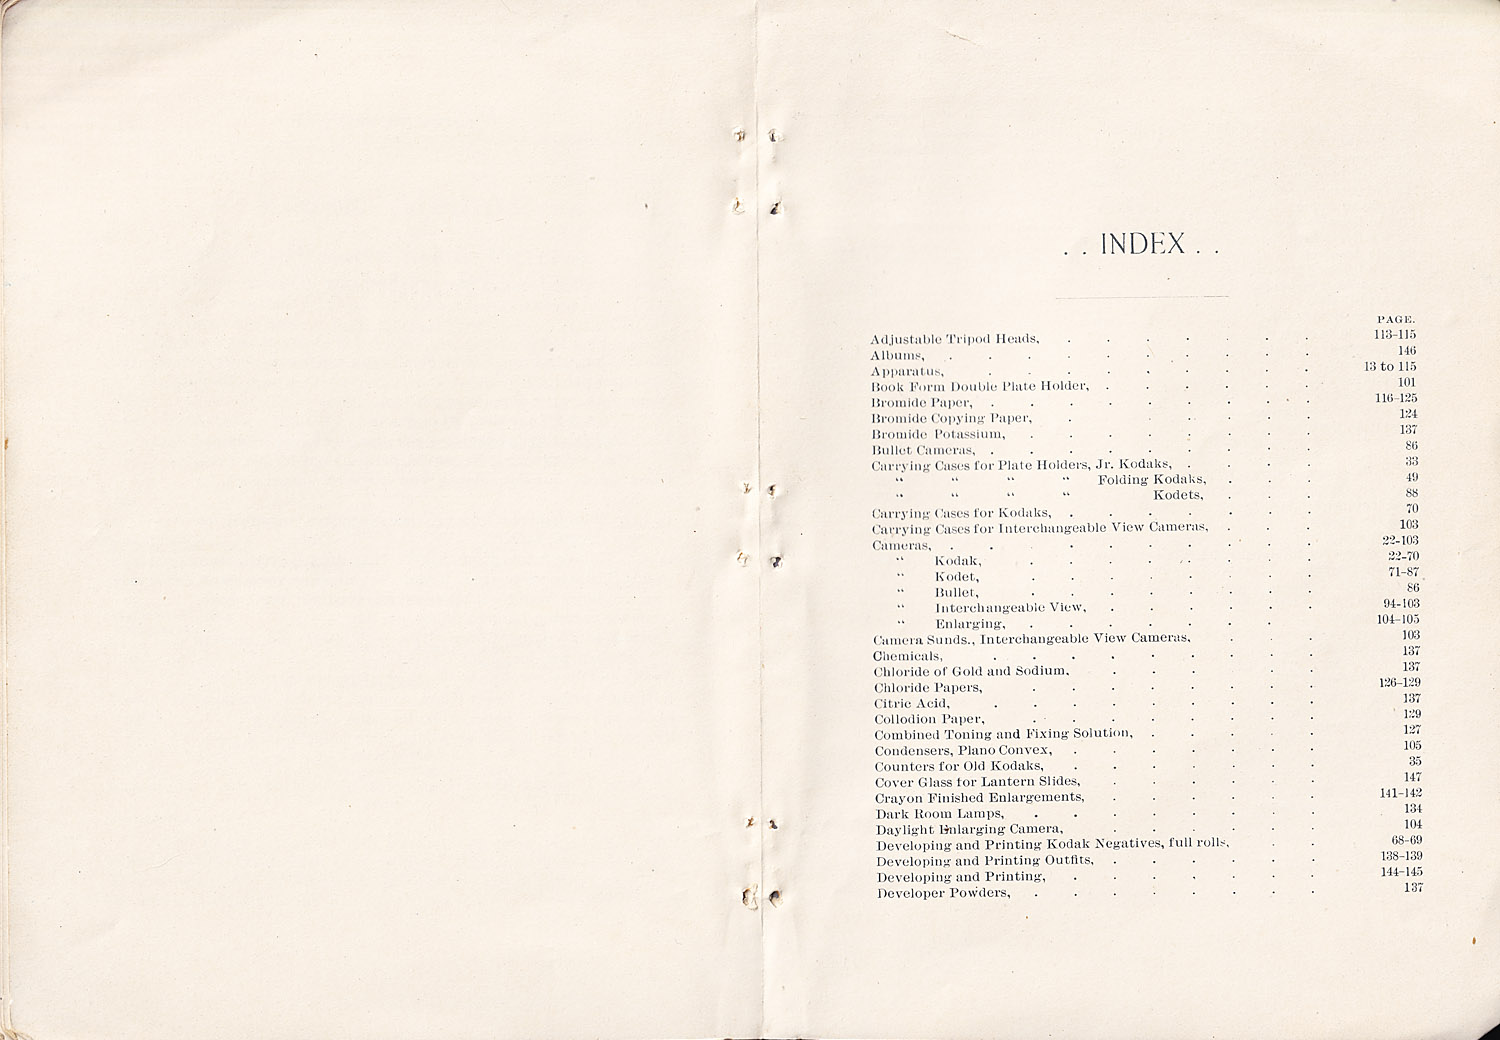 1370.ekc.kodak.products.1895-148-149-1500.jpg